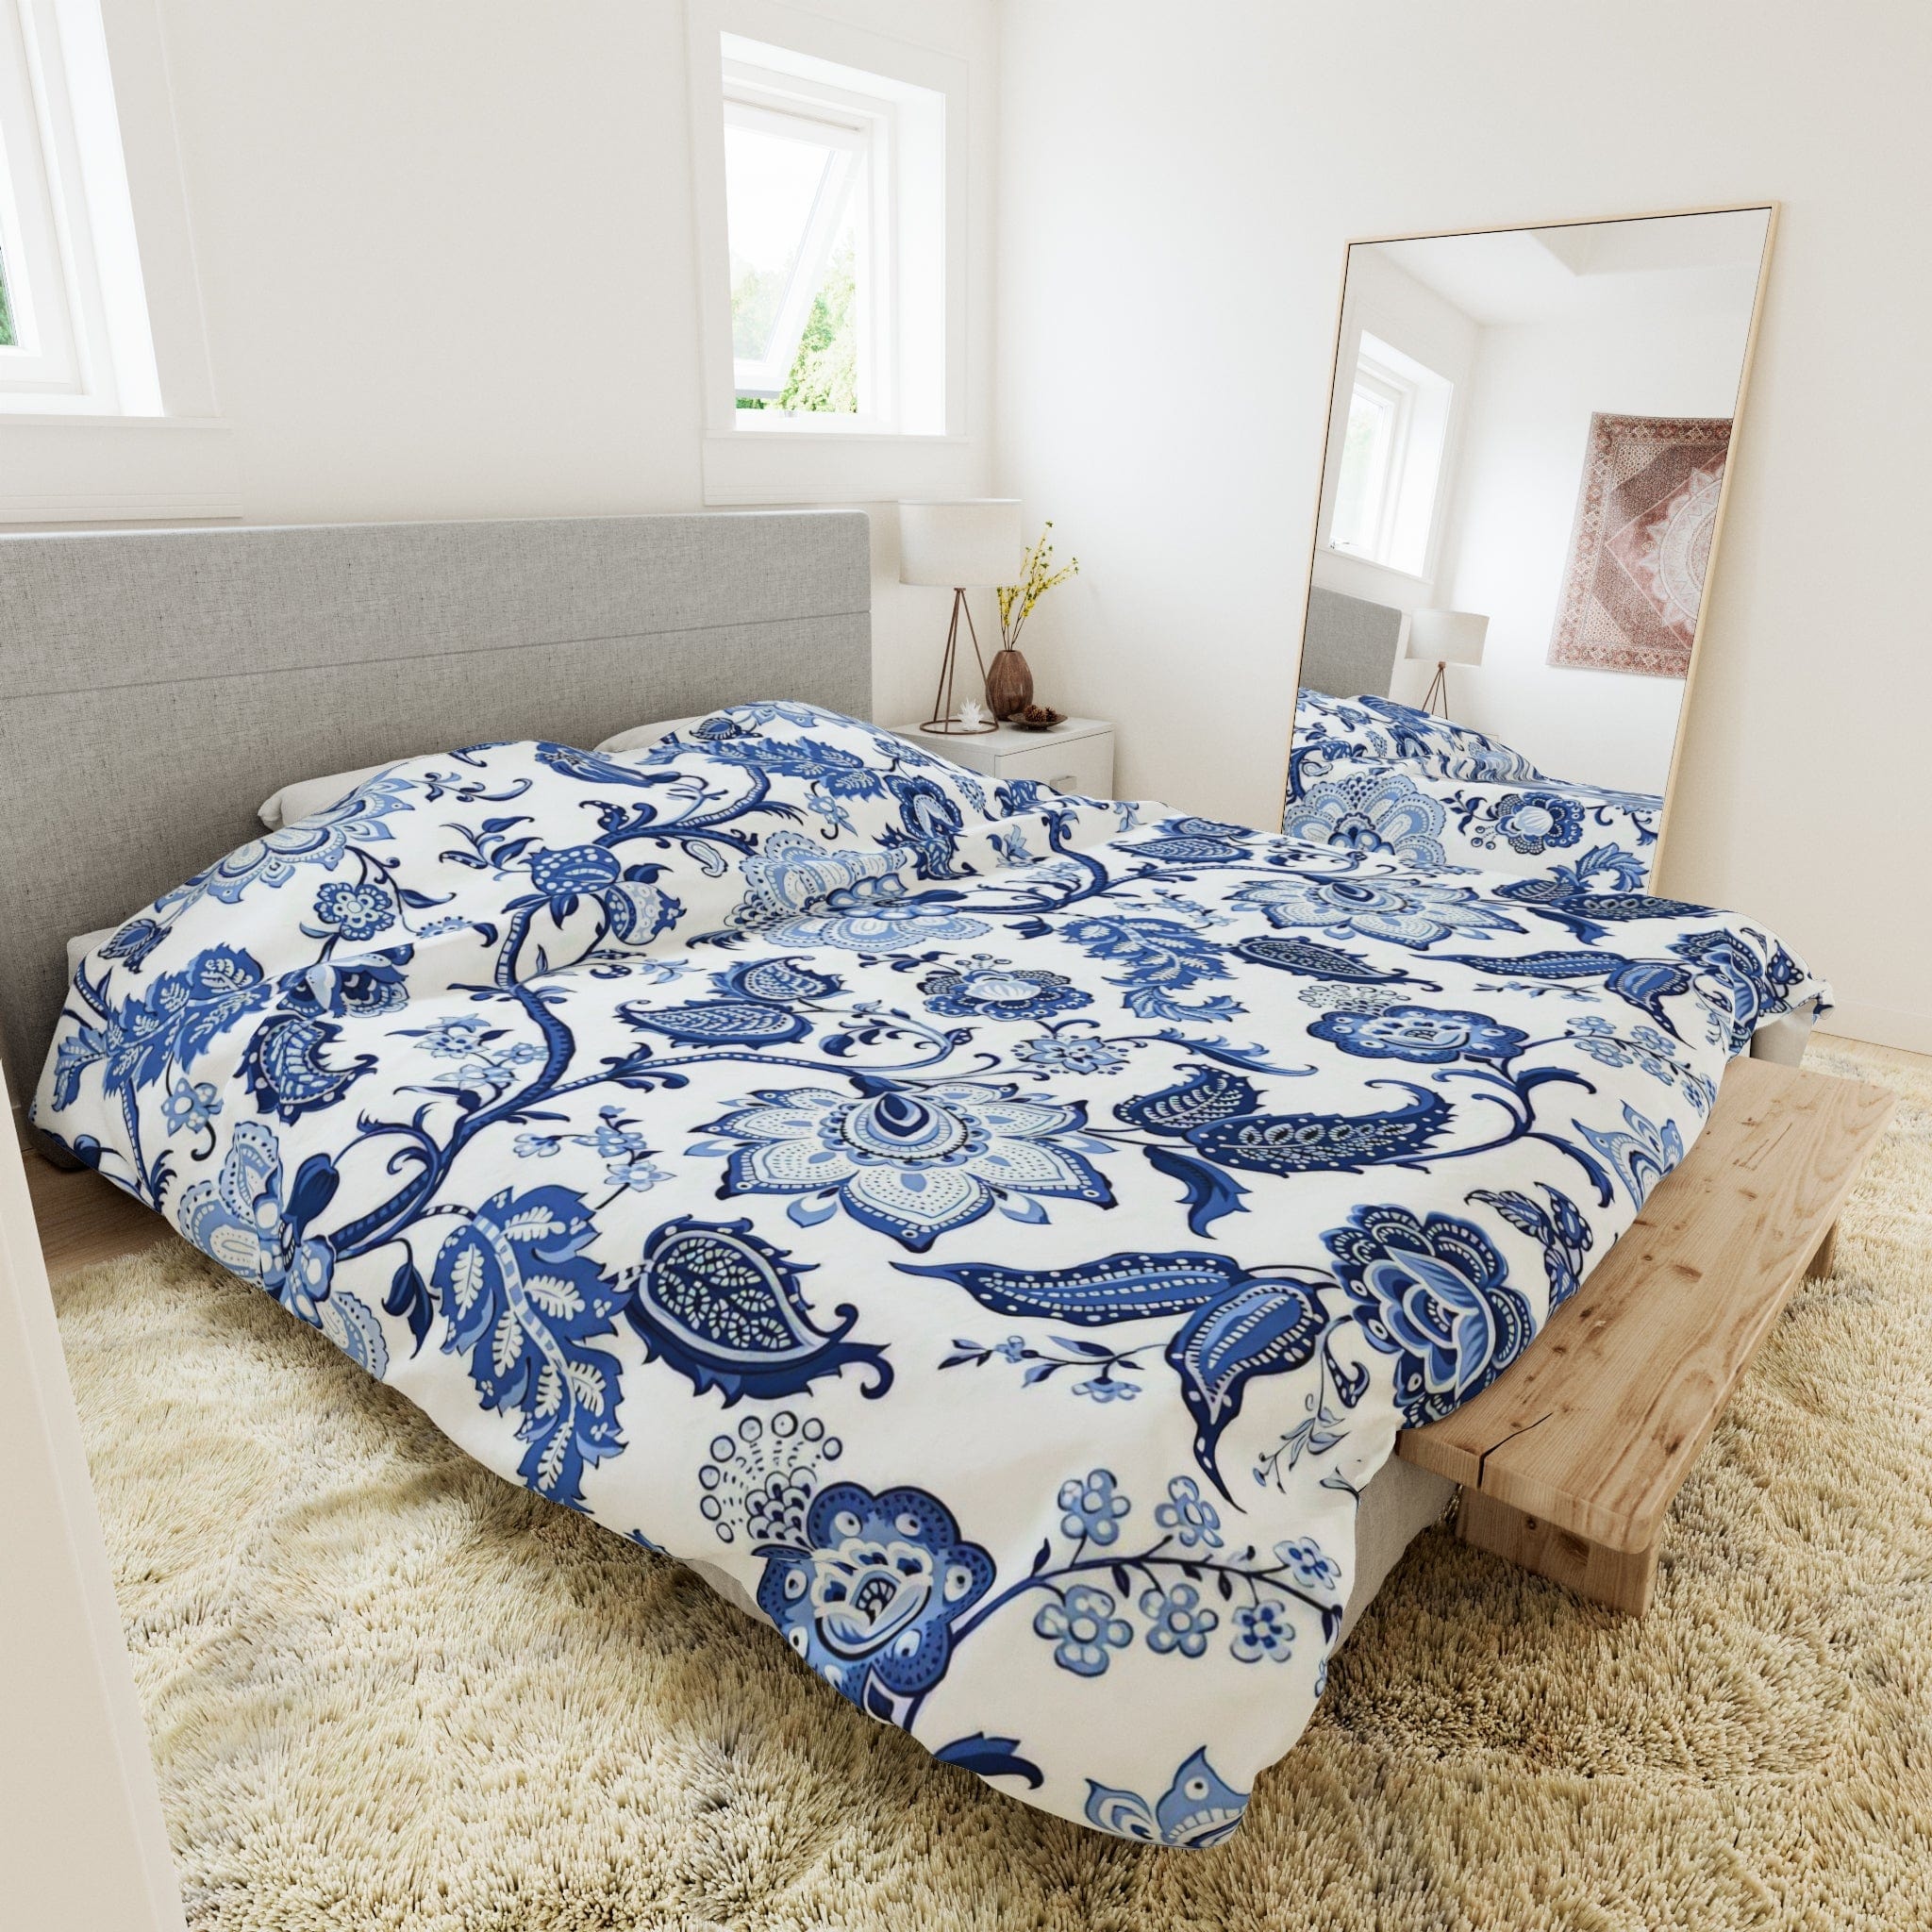 Kate McEnroe New York Blue and White Chinoiserie Jacobean Floral Microfiber Duvet Cover, Grandmillenial Bedroom DecorDuvet Covers17048351975784242406